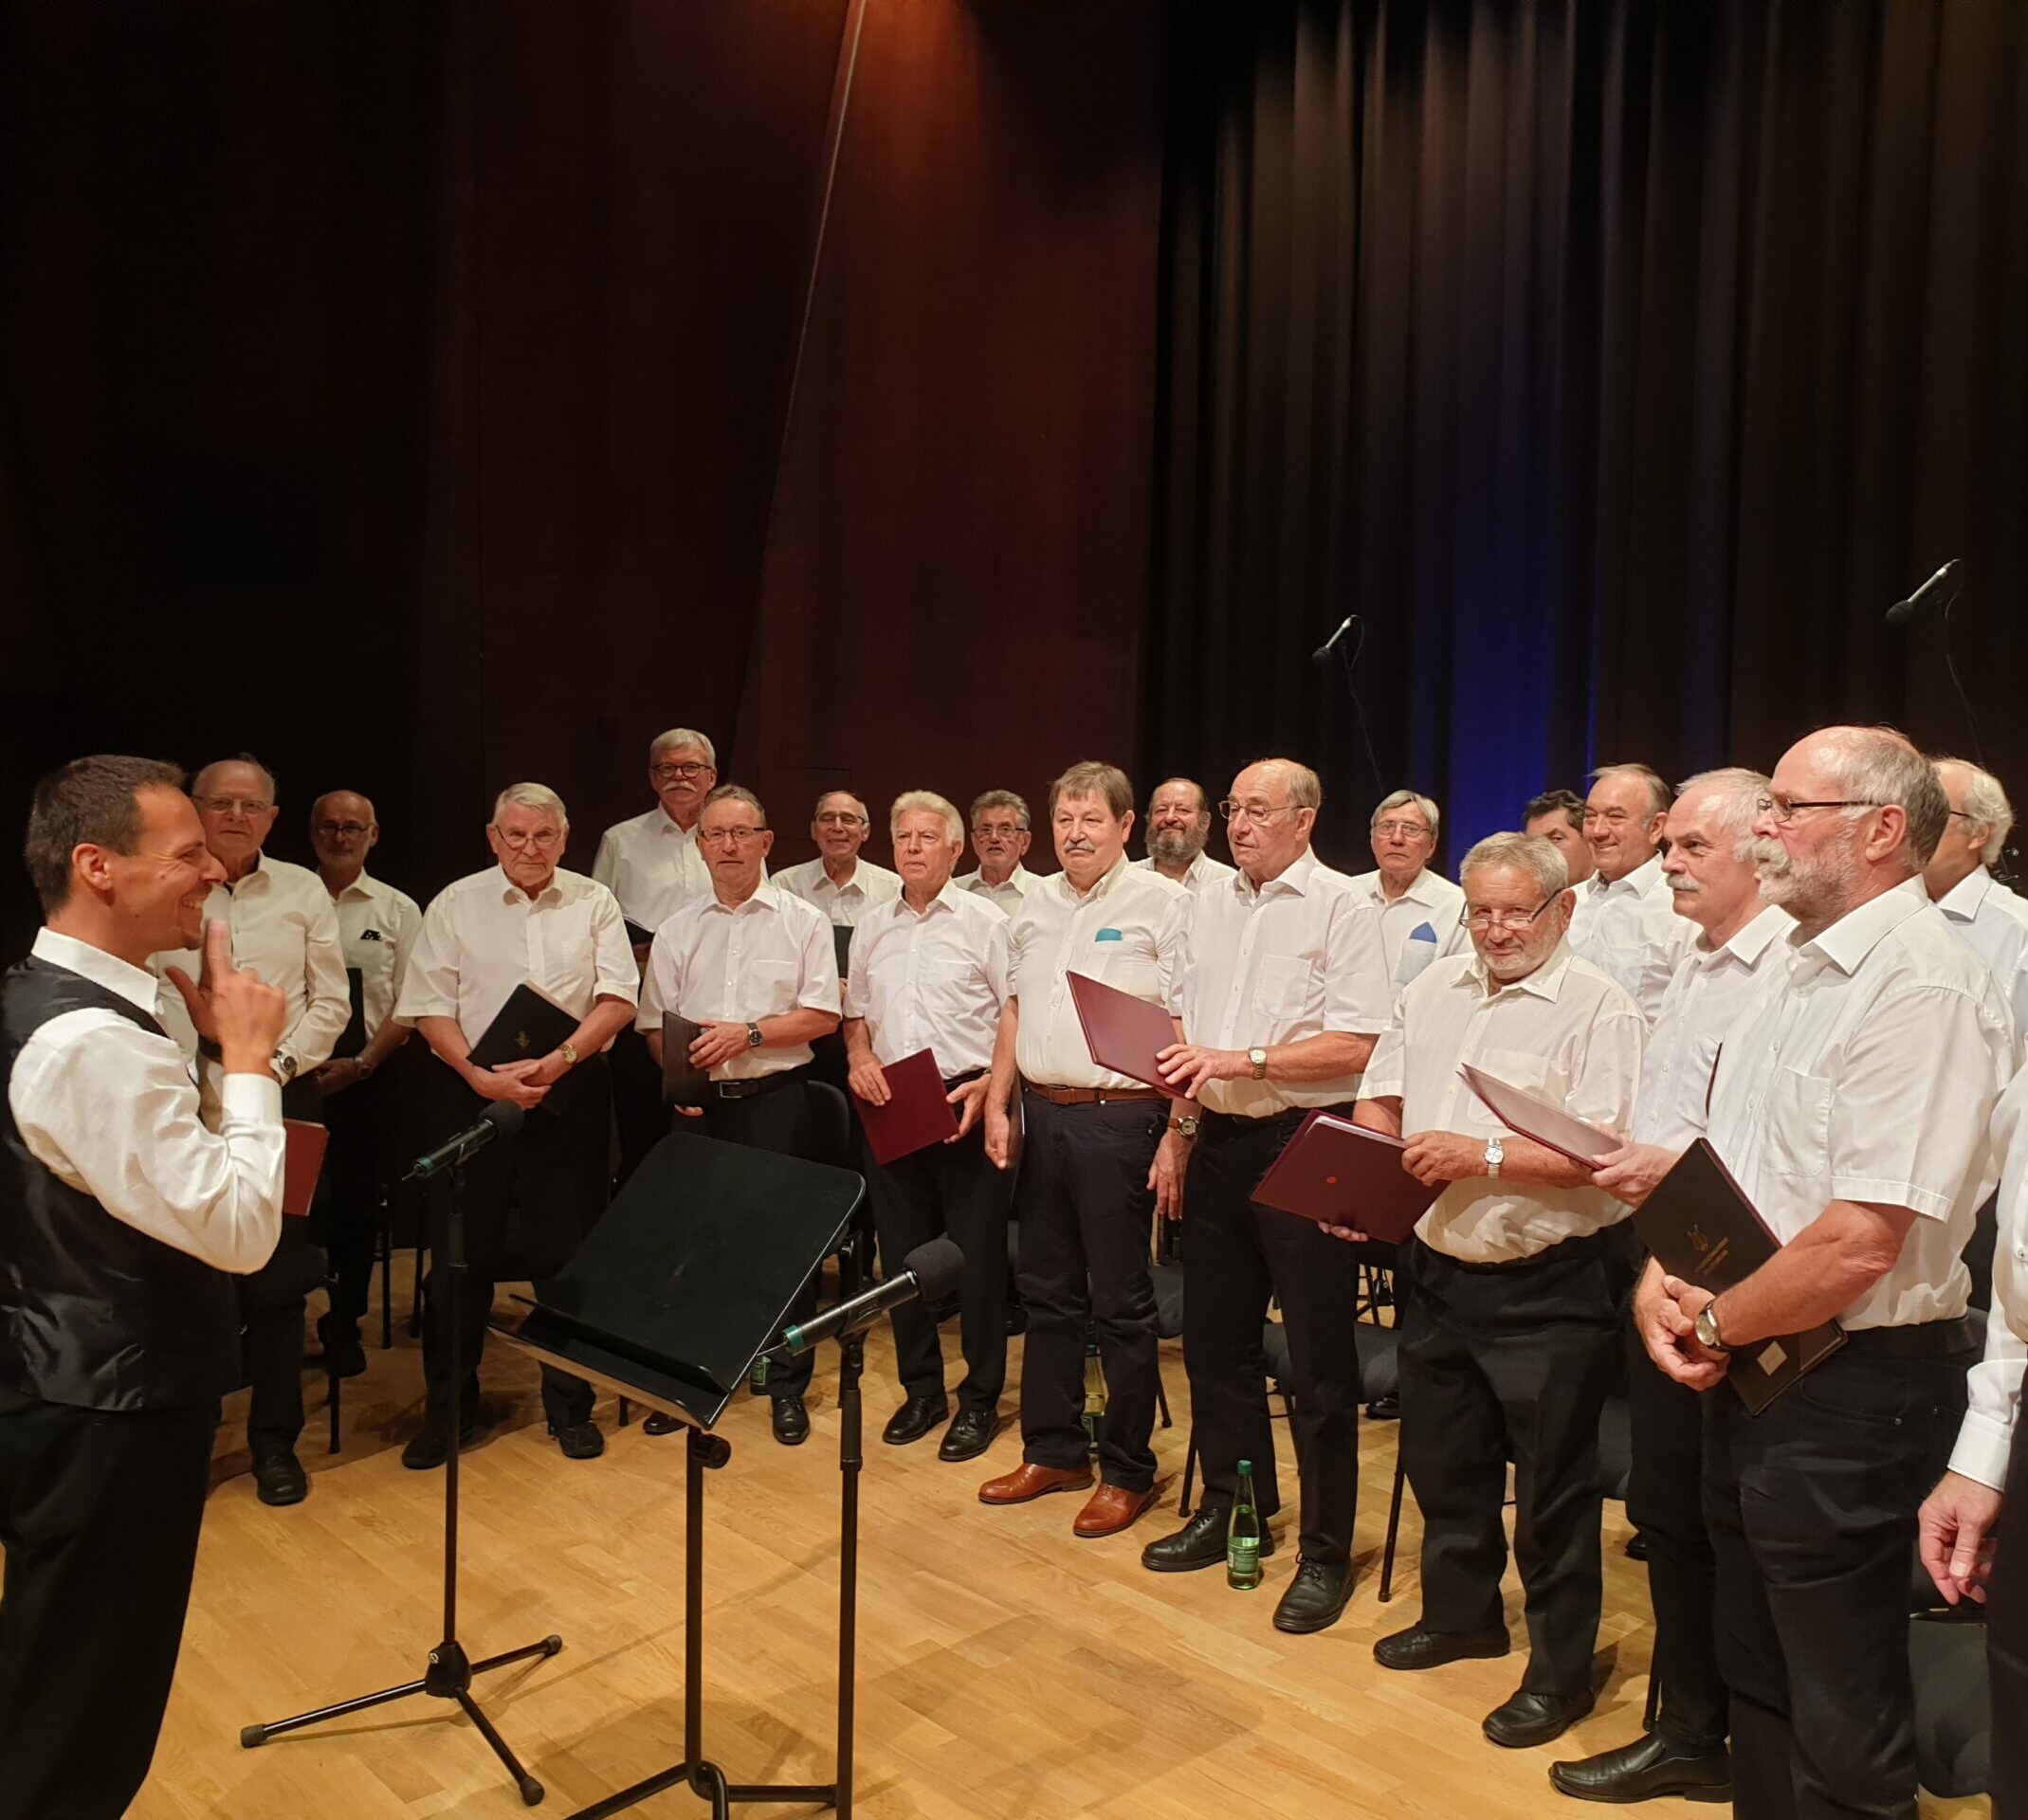 Der Männergesangsverein Kriegenbrunn-Falkendorf bereitet sich auf einen Auftritt vor. Viele Männer im weißen Hemd und schwarzer Hose stehen gemeinsam mit ihrem Chorleiter auf der Bühne, Chormappen in den Händen.